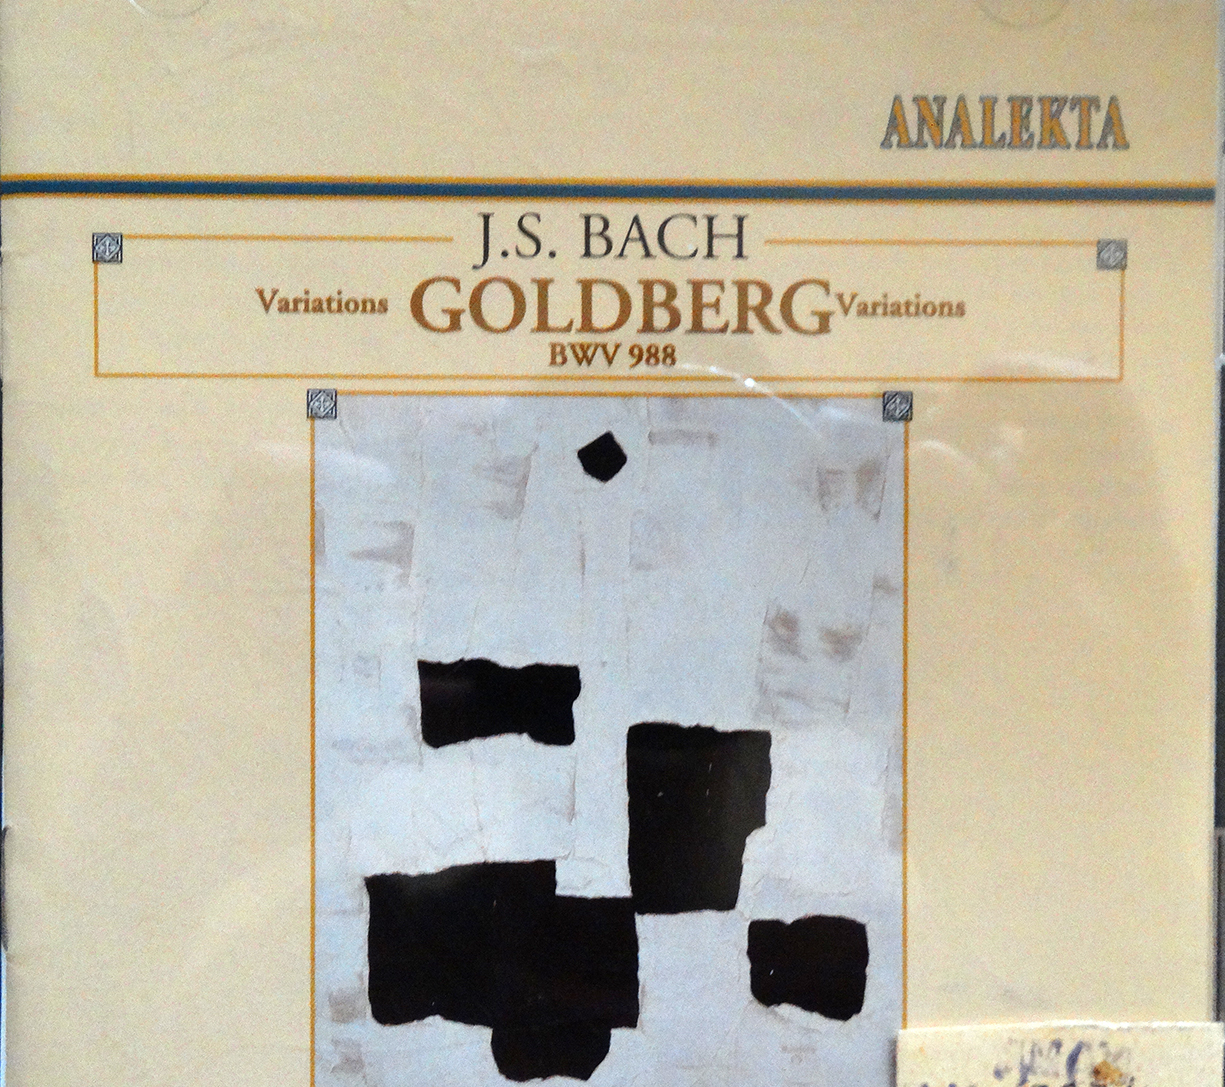 Գոլդբերգյան վարիացիաներ BWV 988  